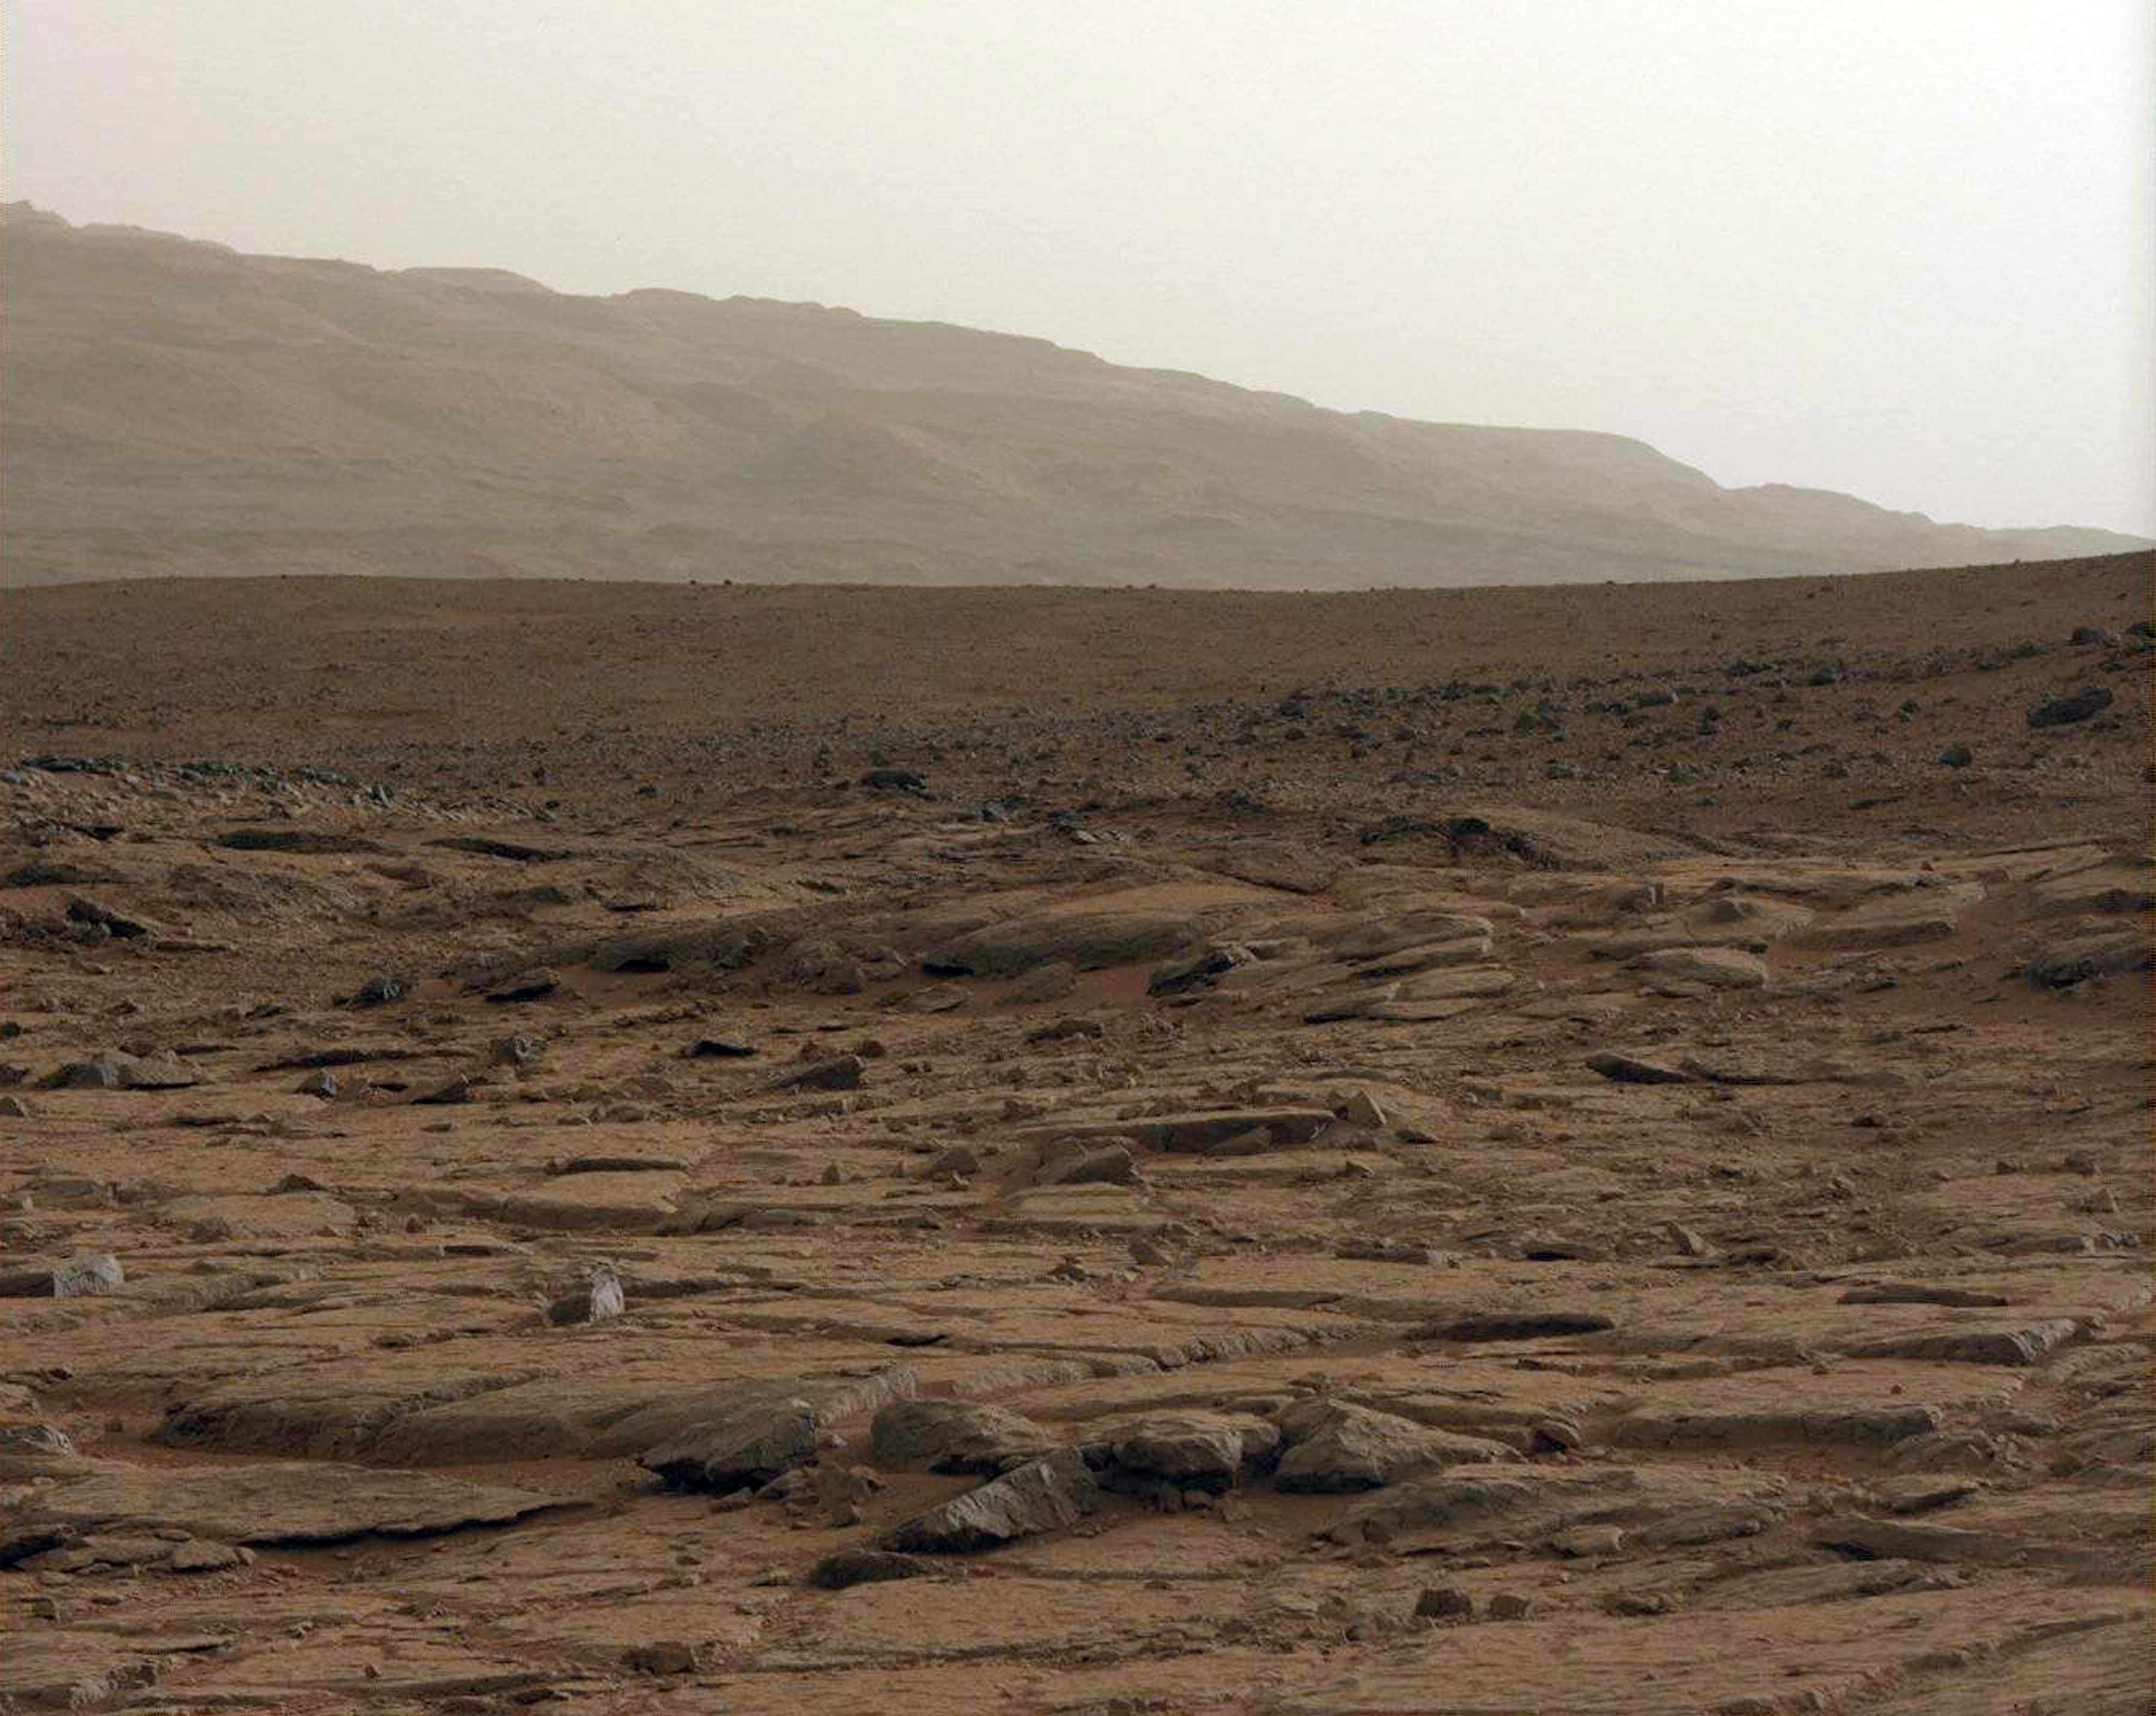 Marsi látkép, 2013. január 27.